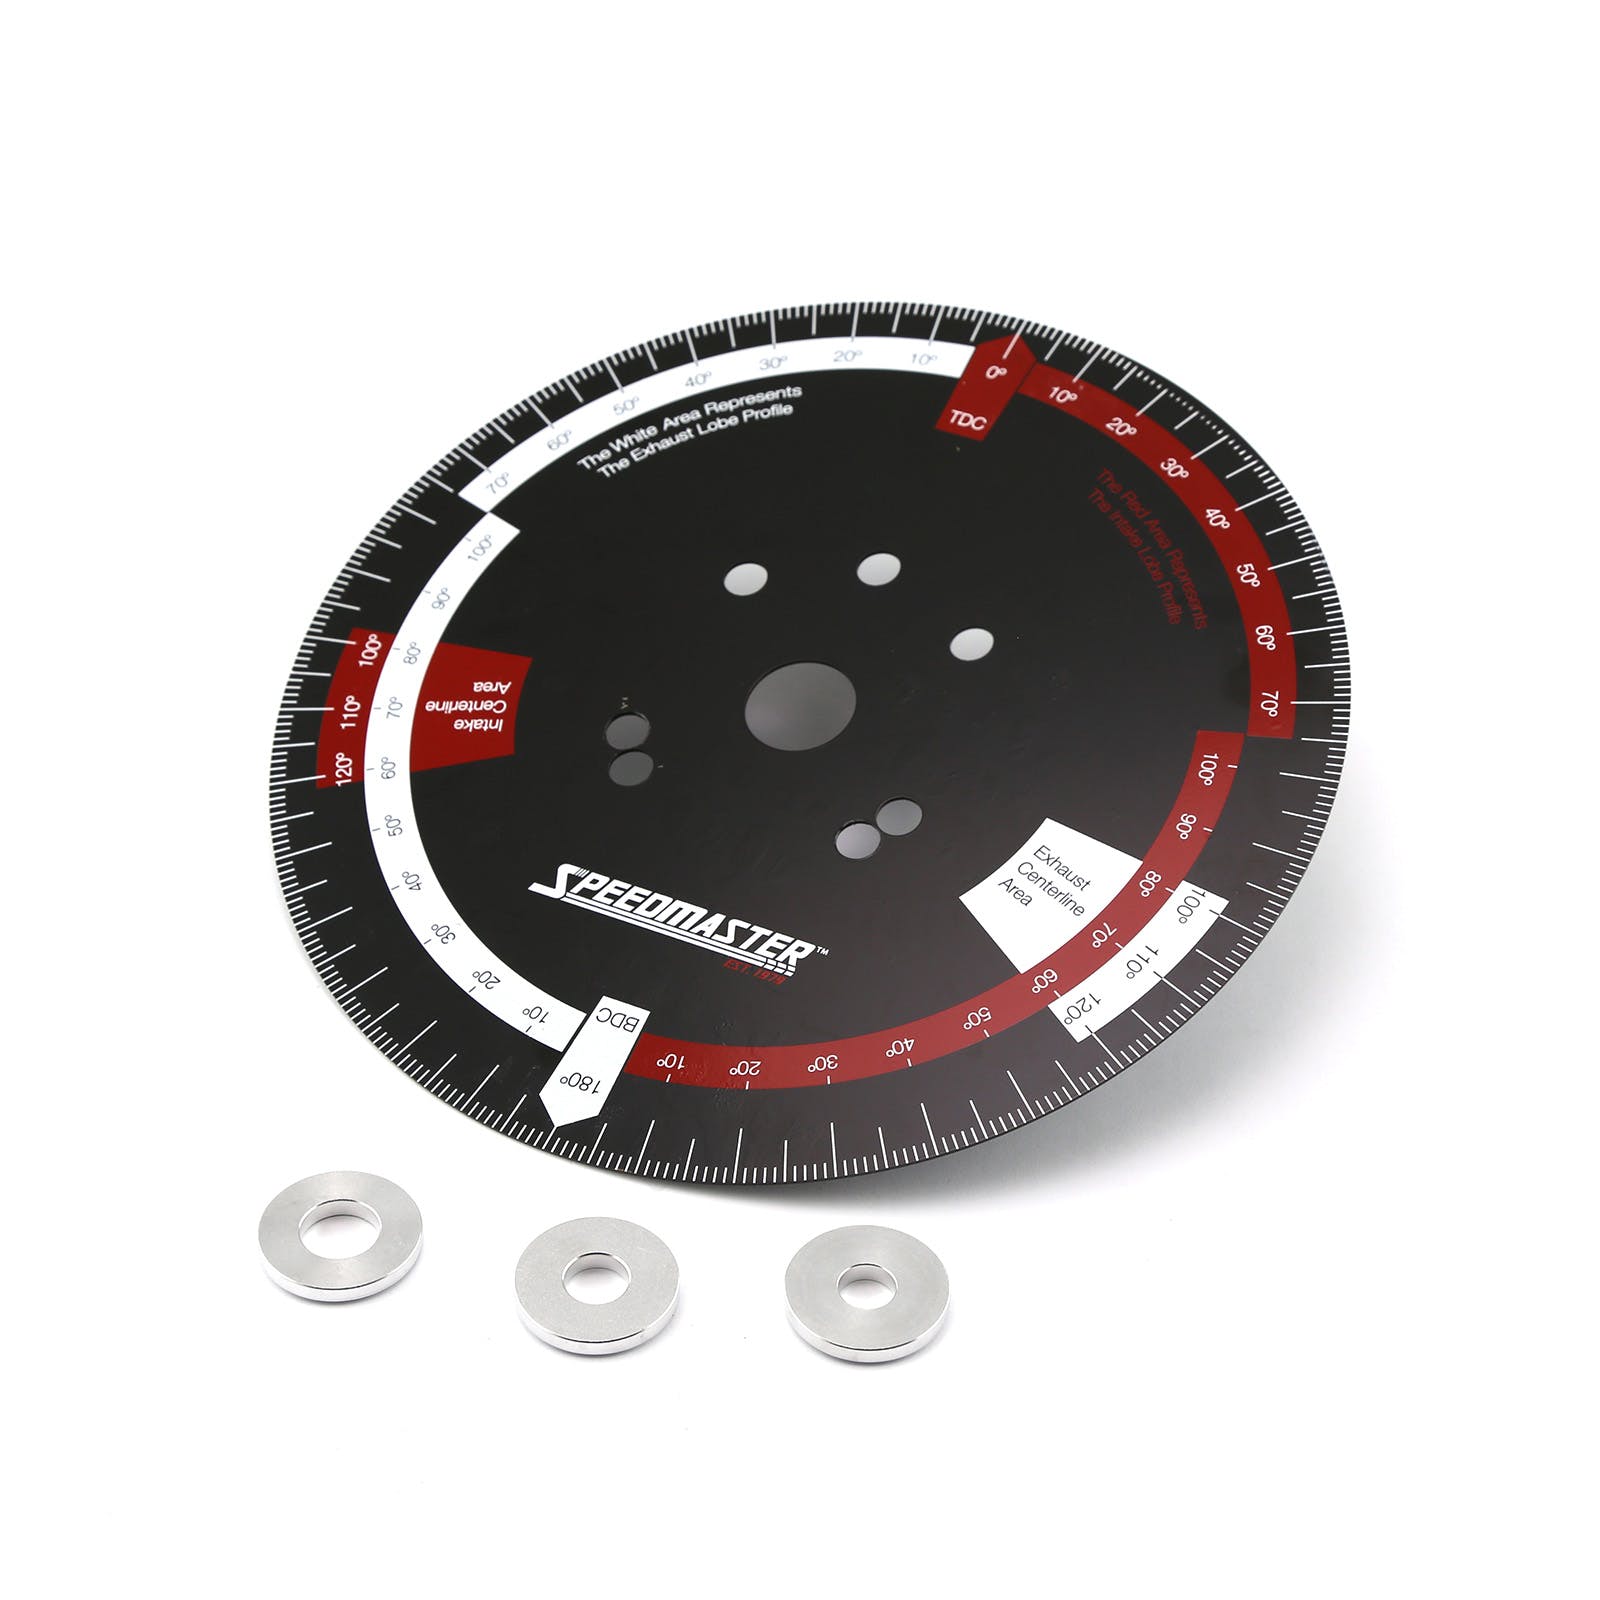 Speedmaster 1-398-001 10 Pressed Steel Camshaft Timing Degree Wheel